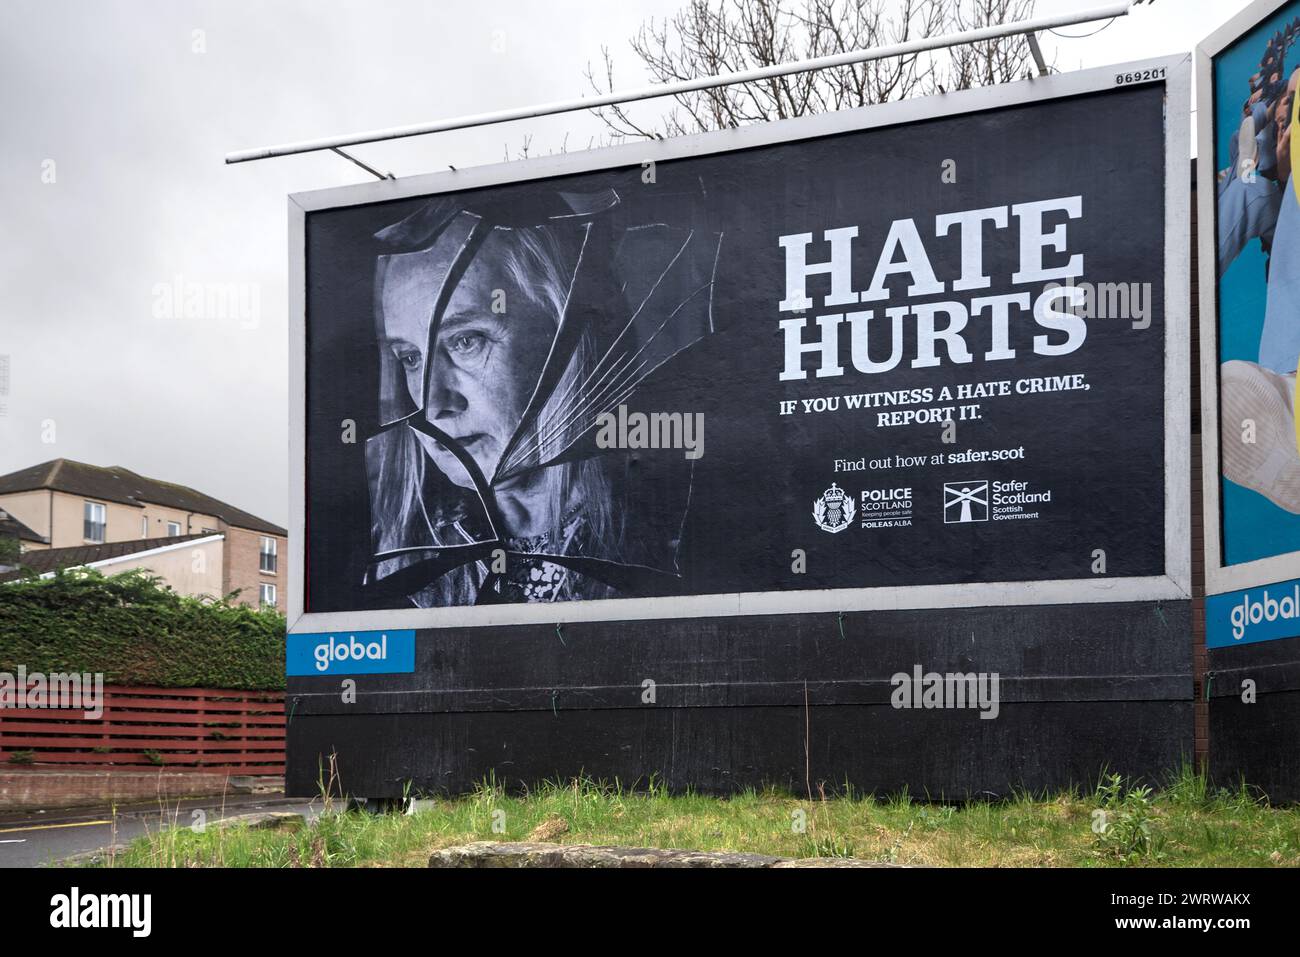 Hate Hurts Billboard, Kampagne von Police Scotland und Safer Scotland Scottish Government, um das öffentliche Bewusstsein für die Auswirkungen von Hassverbrechen zu schärfen. Stockfoto